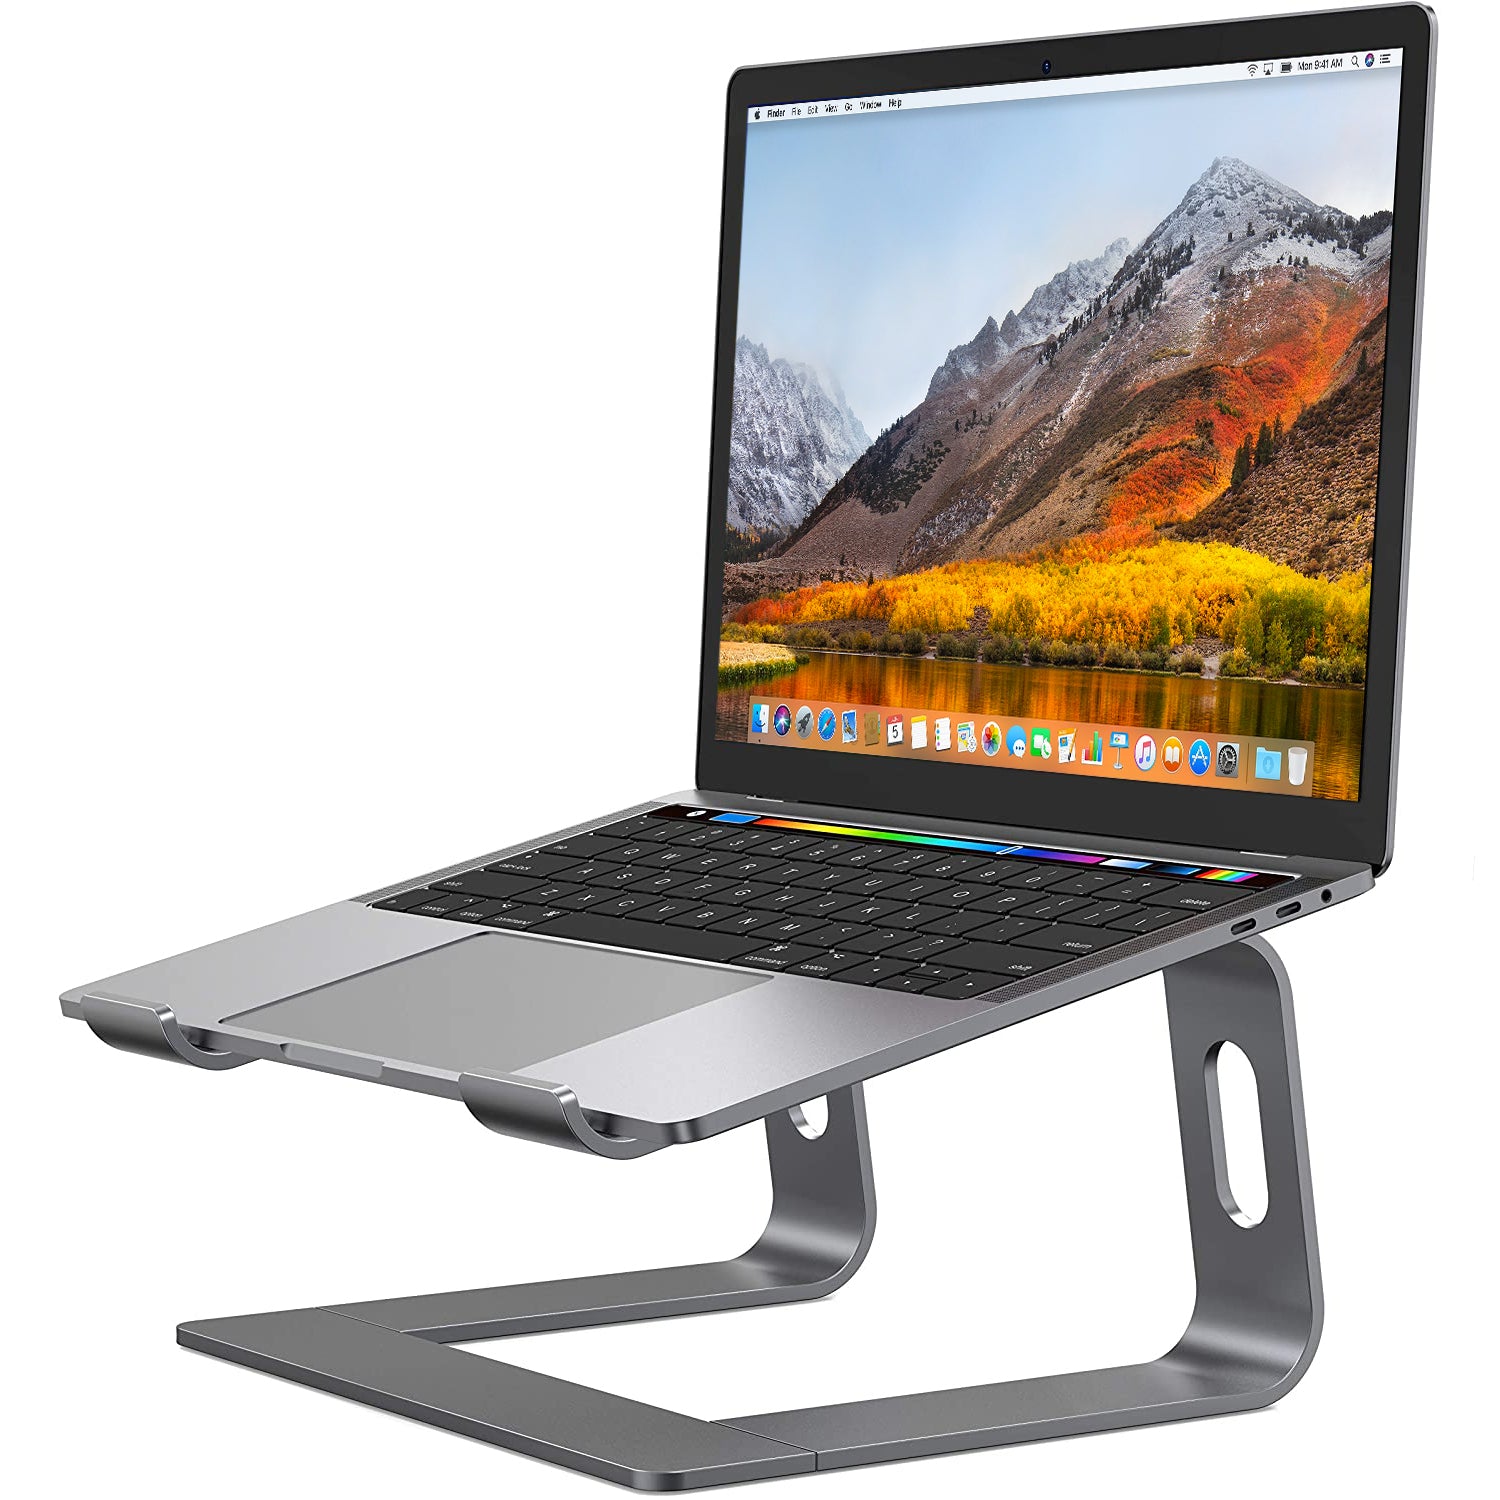 An Apple Macbook Pro on a very well built aluminium stand 